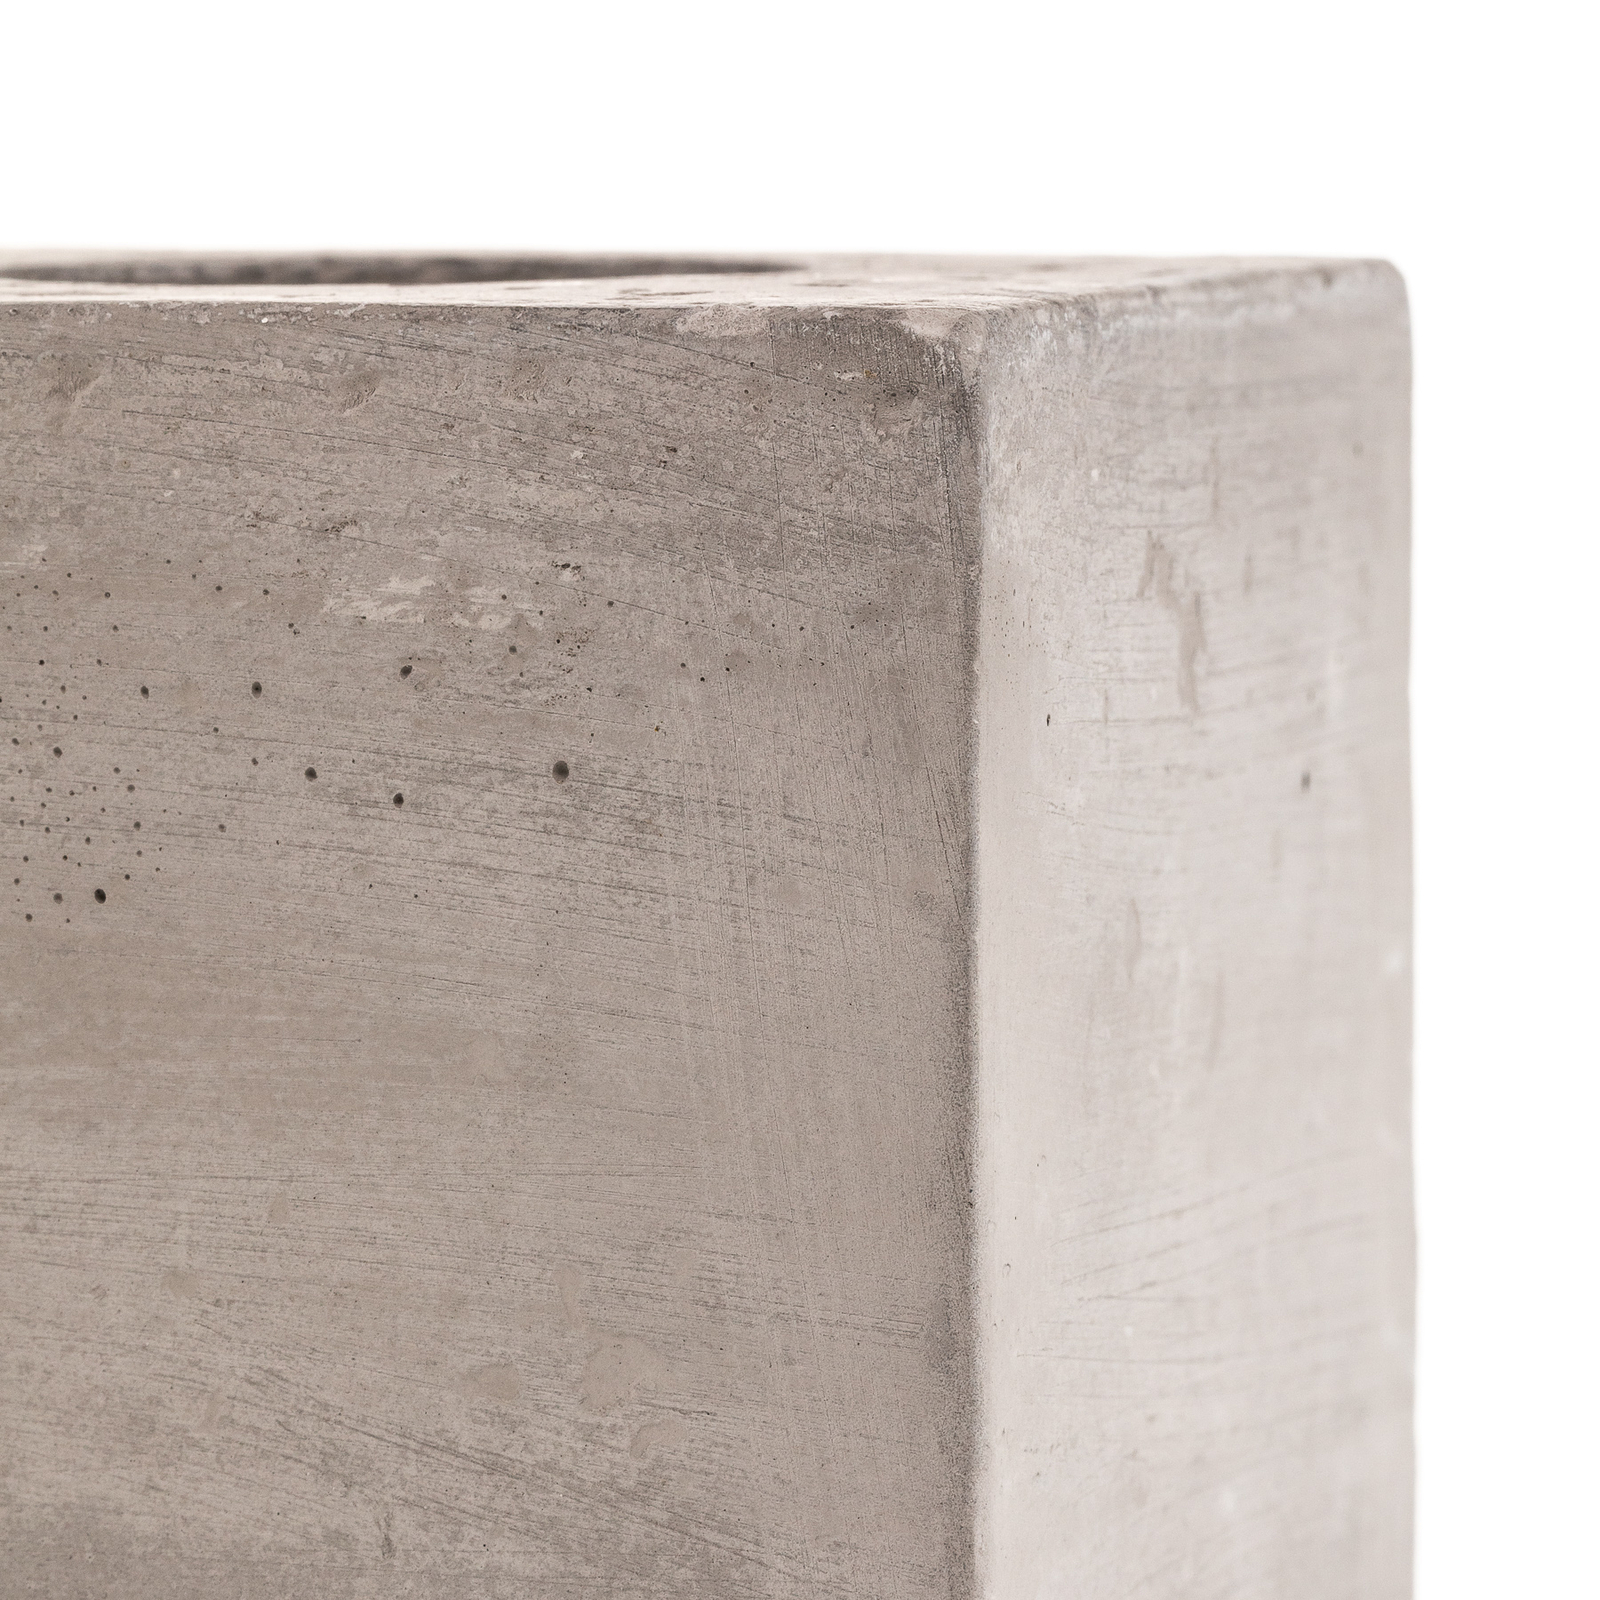 Lampa stołowa Akira wykonana z betonu w kształcie sześcianu